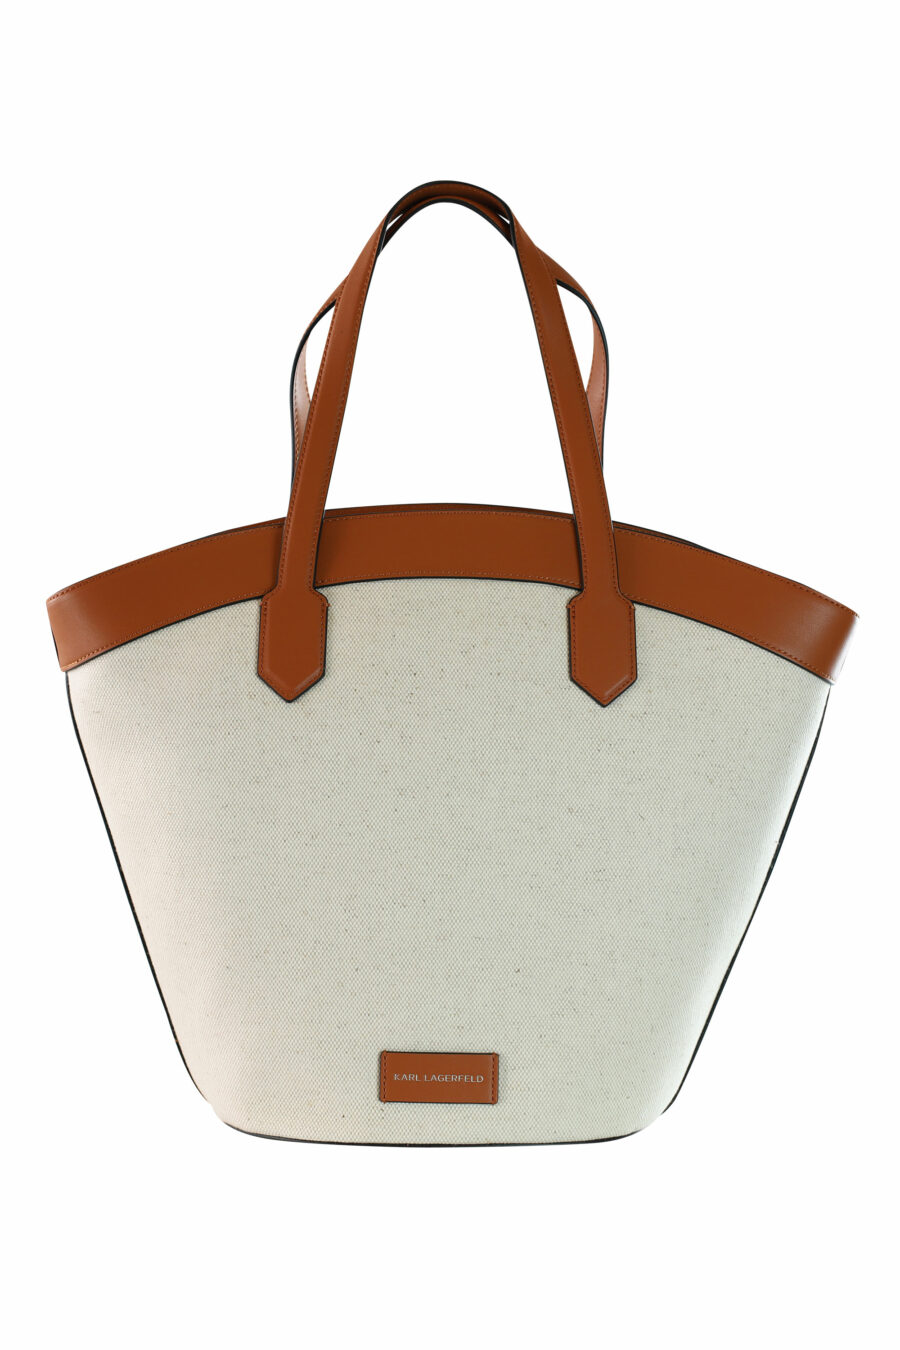 Tote bag blanco con marrón y logo "k/tulip" - 8720744234777 3